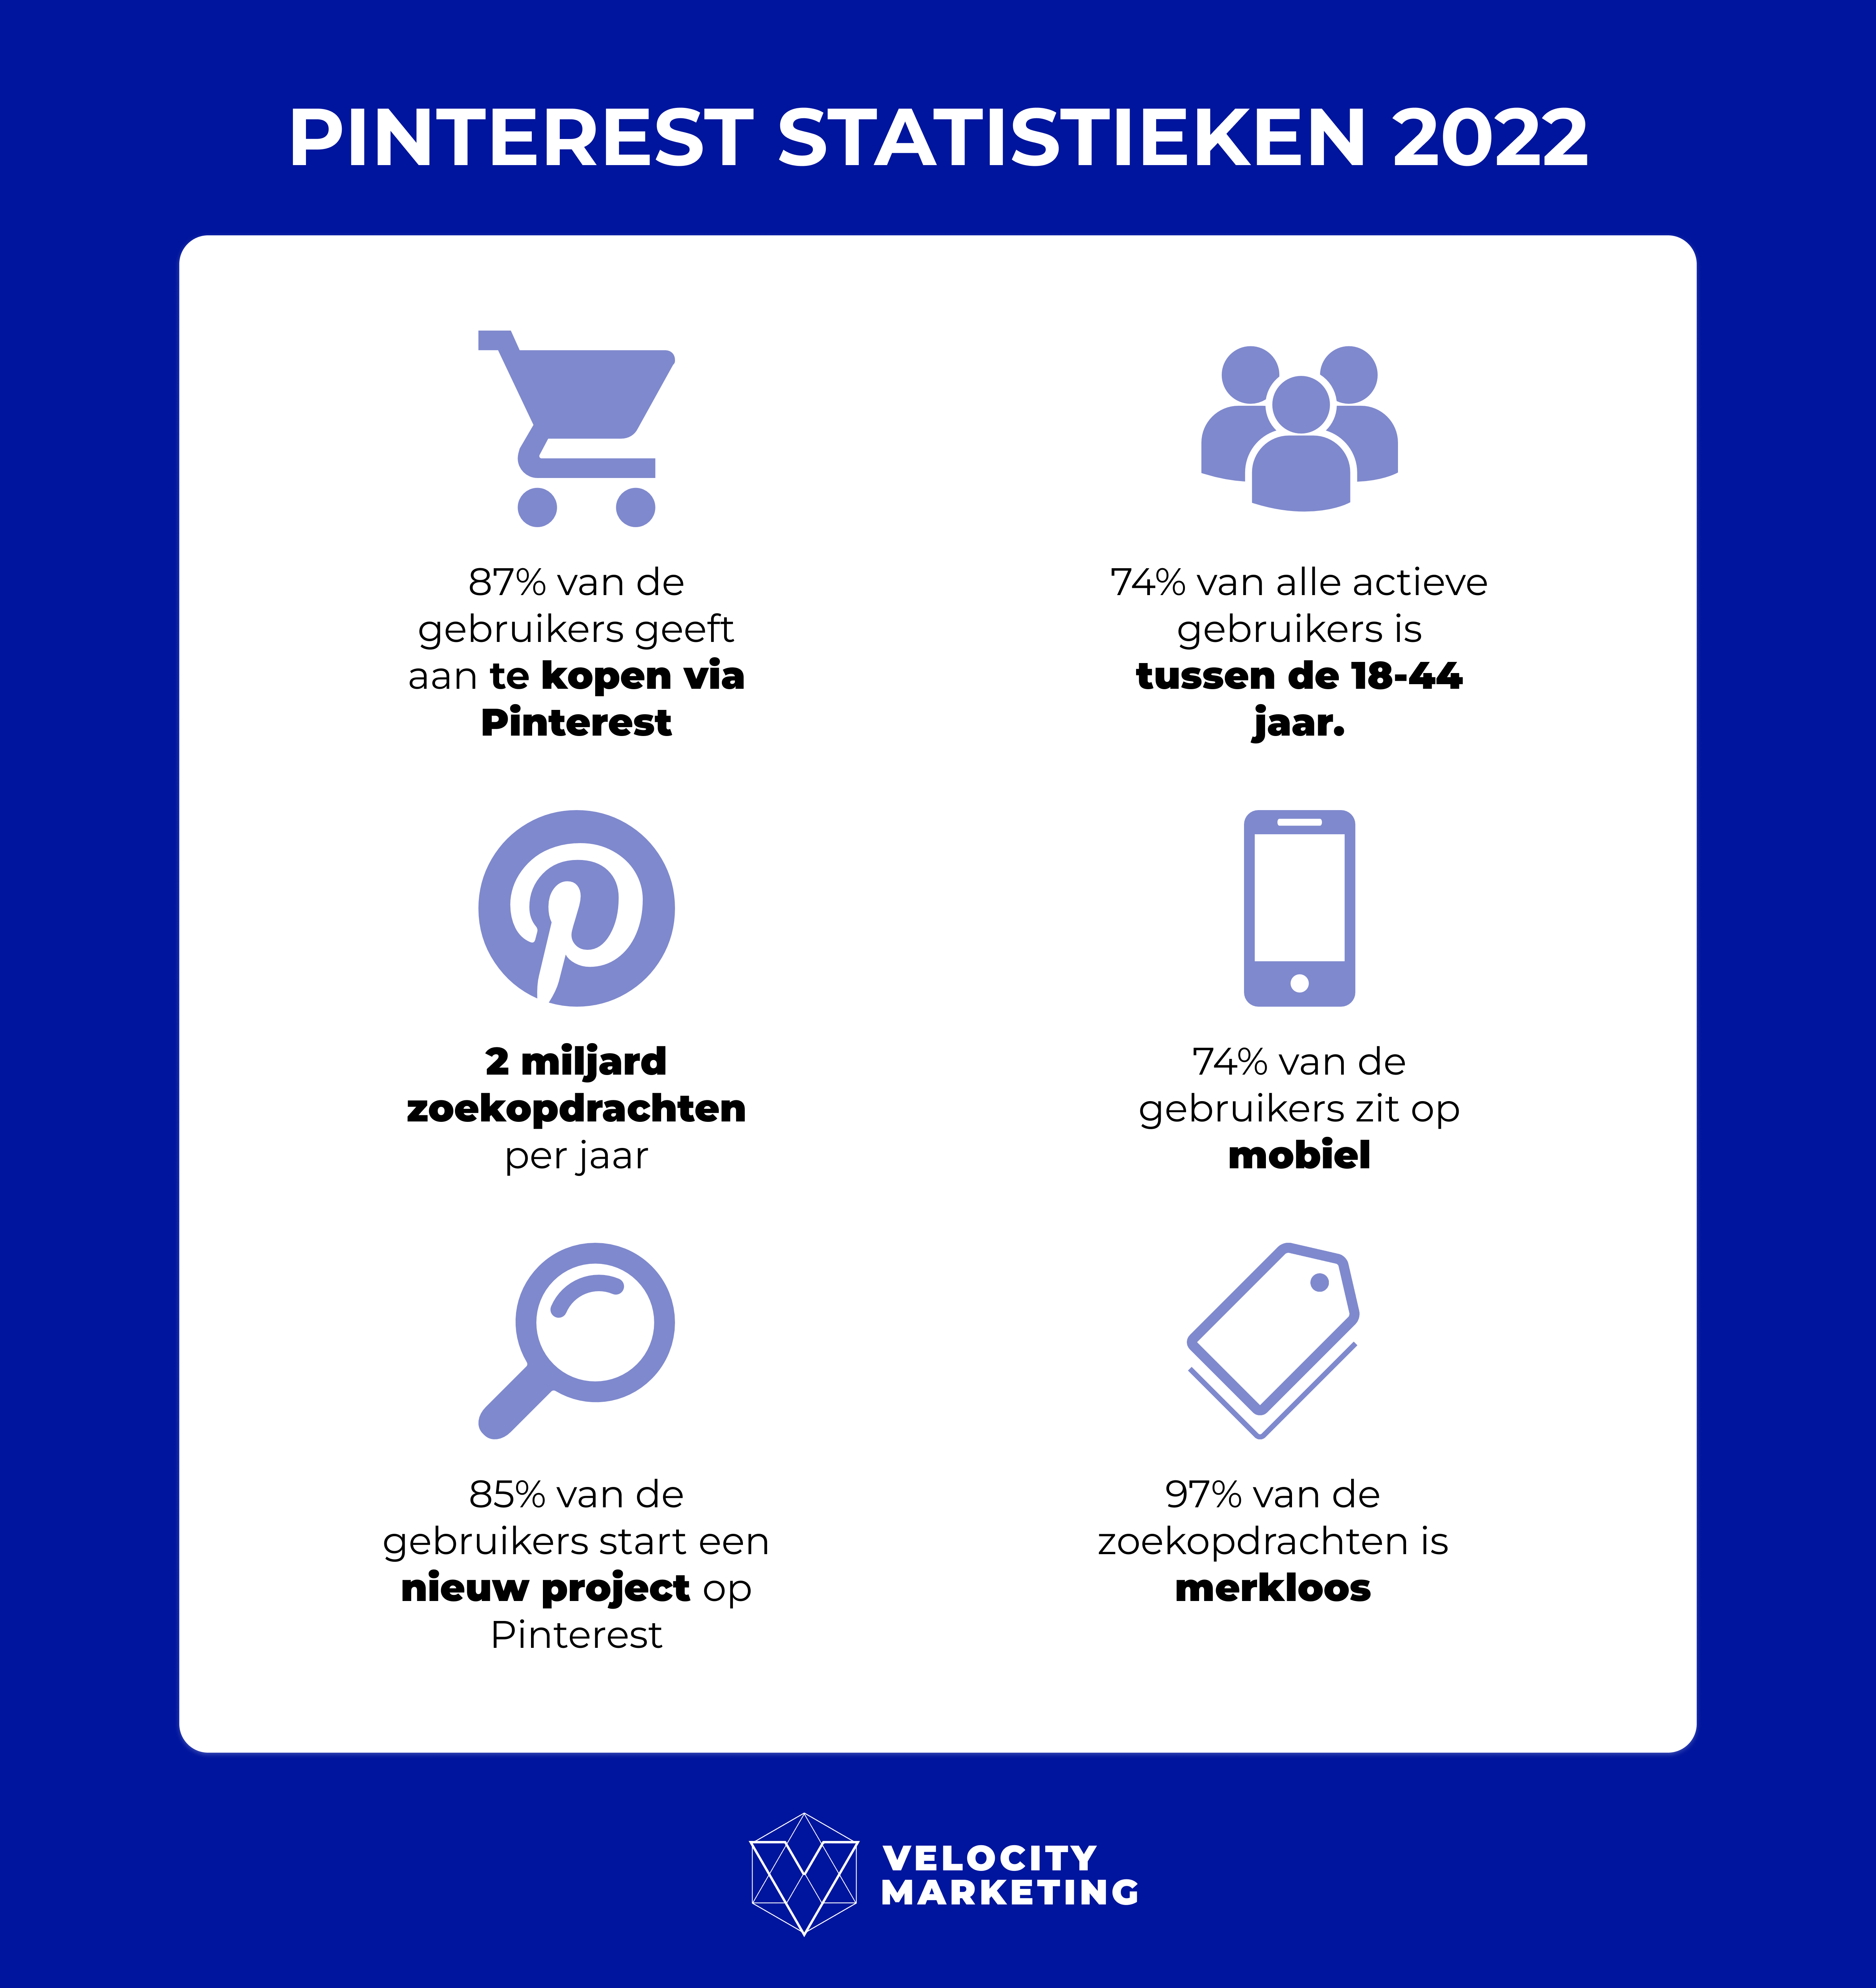 Pinterest statistieken 2022 voor marketing